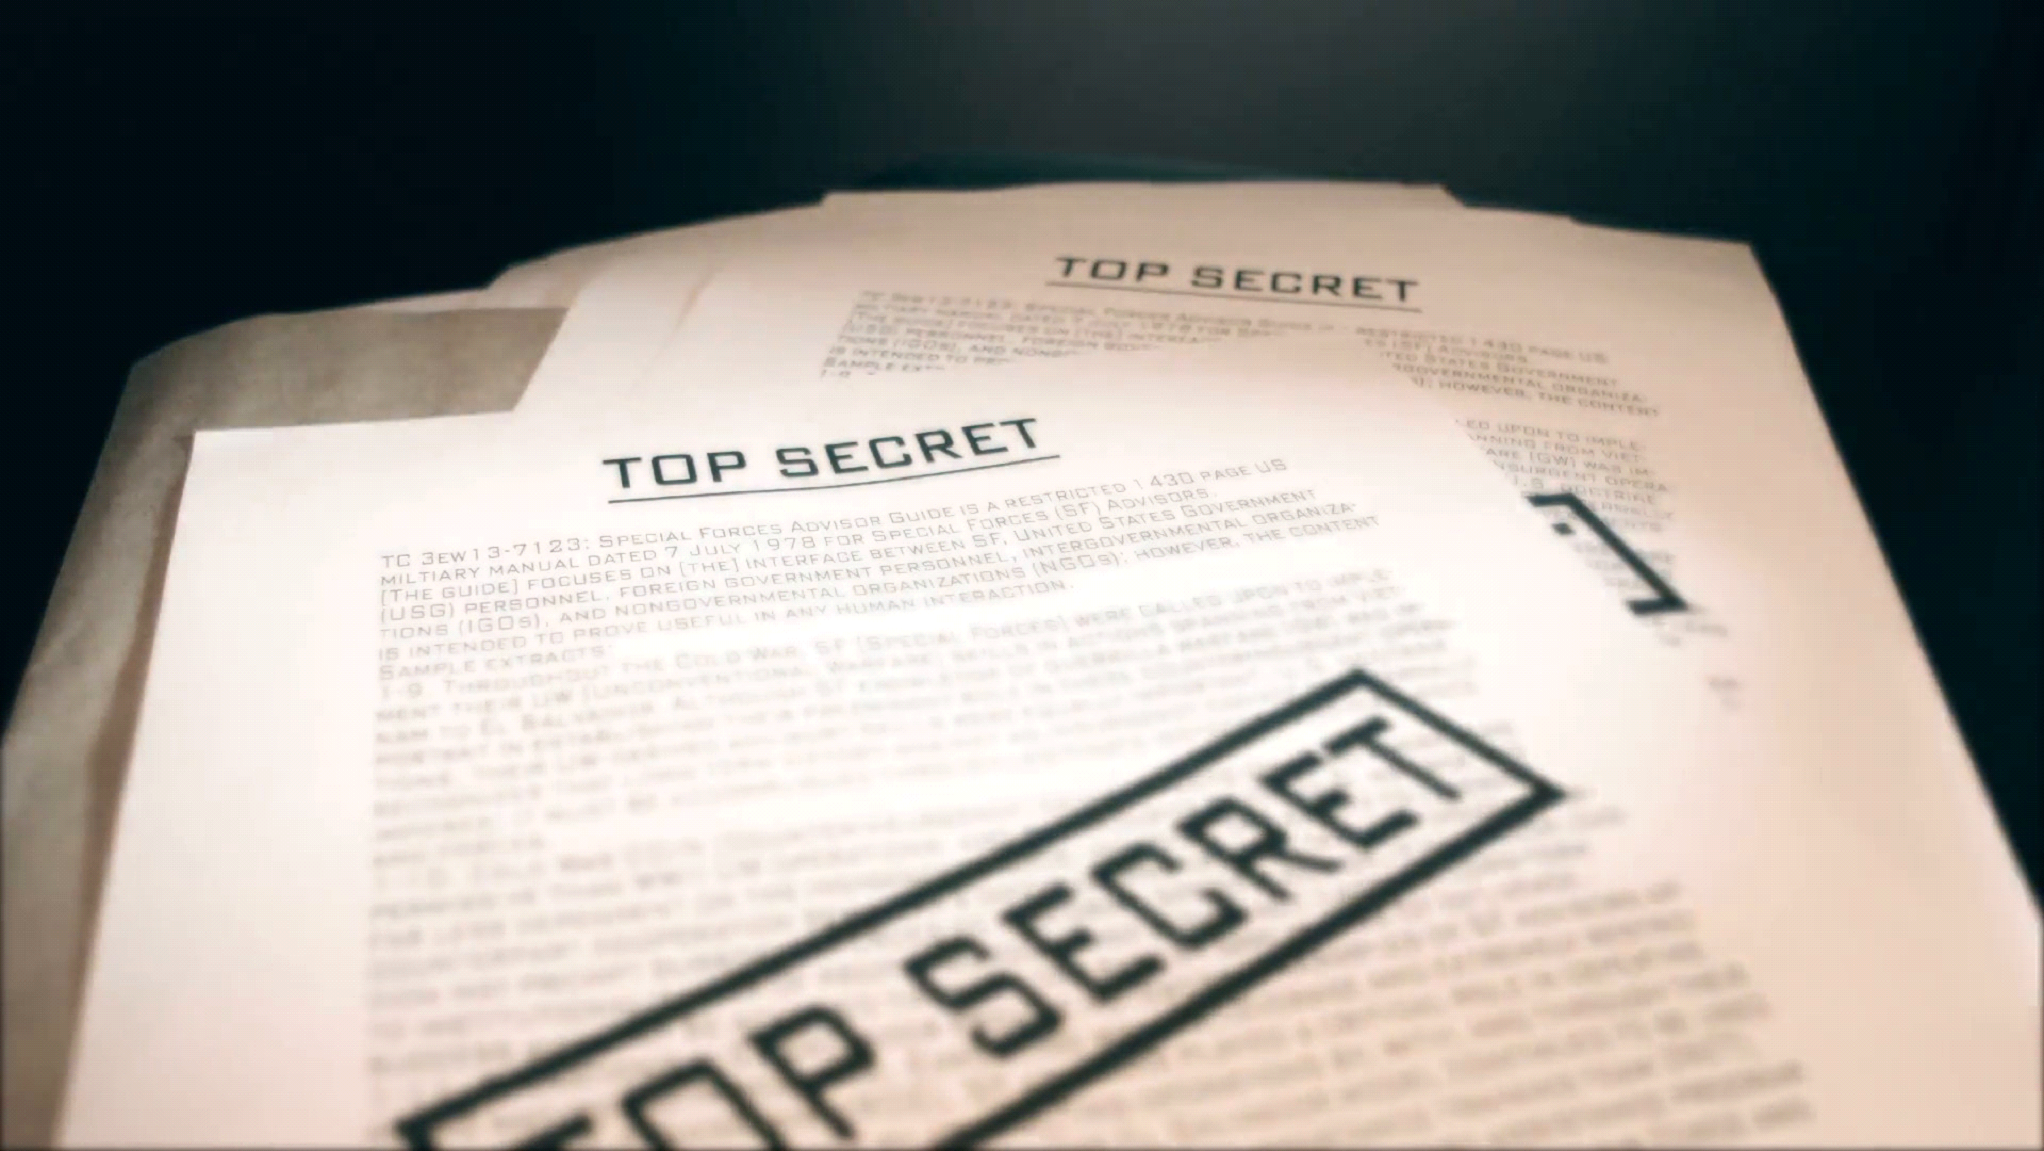 Совершенно секретные документы. Совершенно секретно документы. Секретные документы. Секретные документы Top Secret.